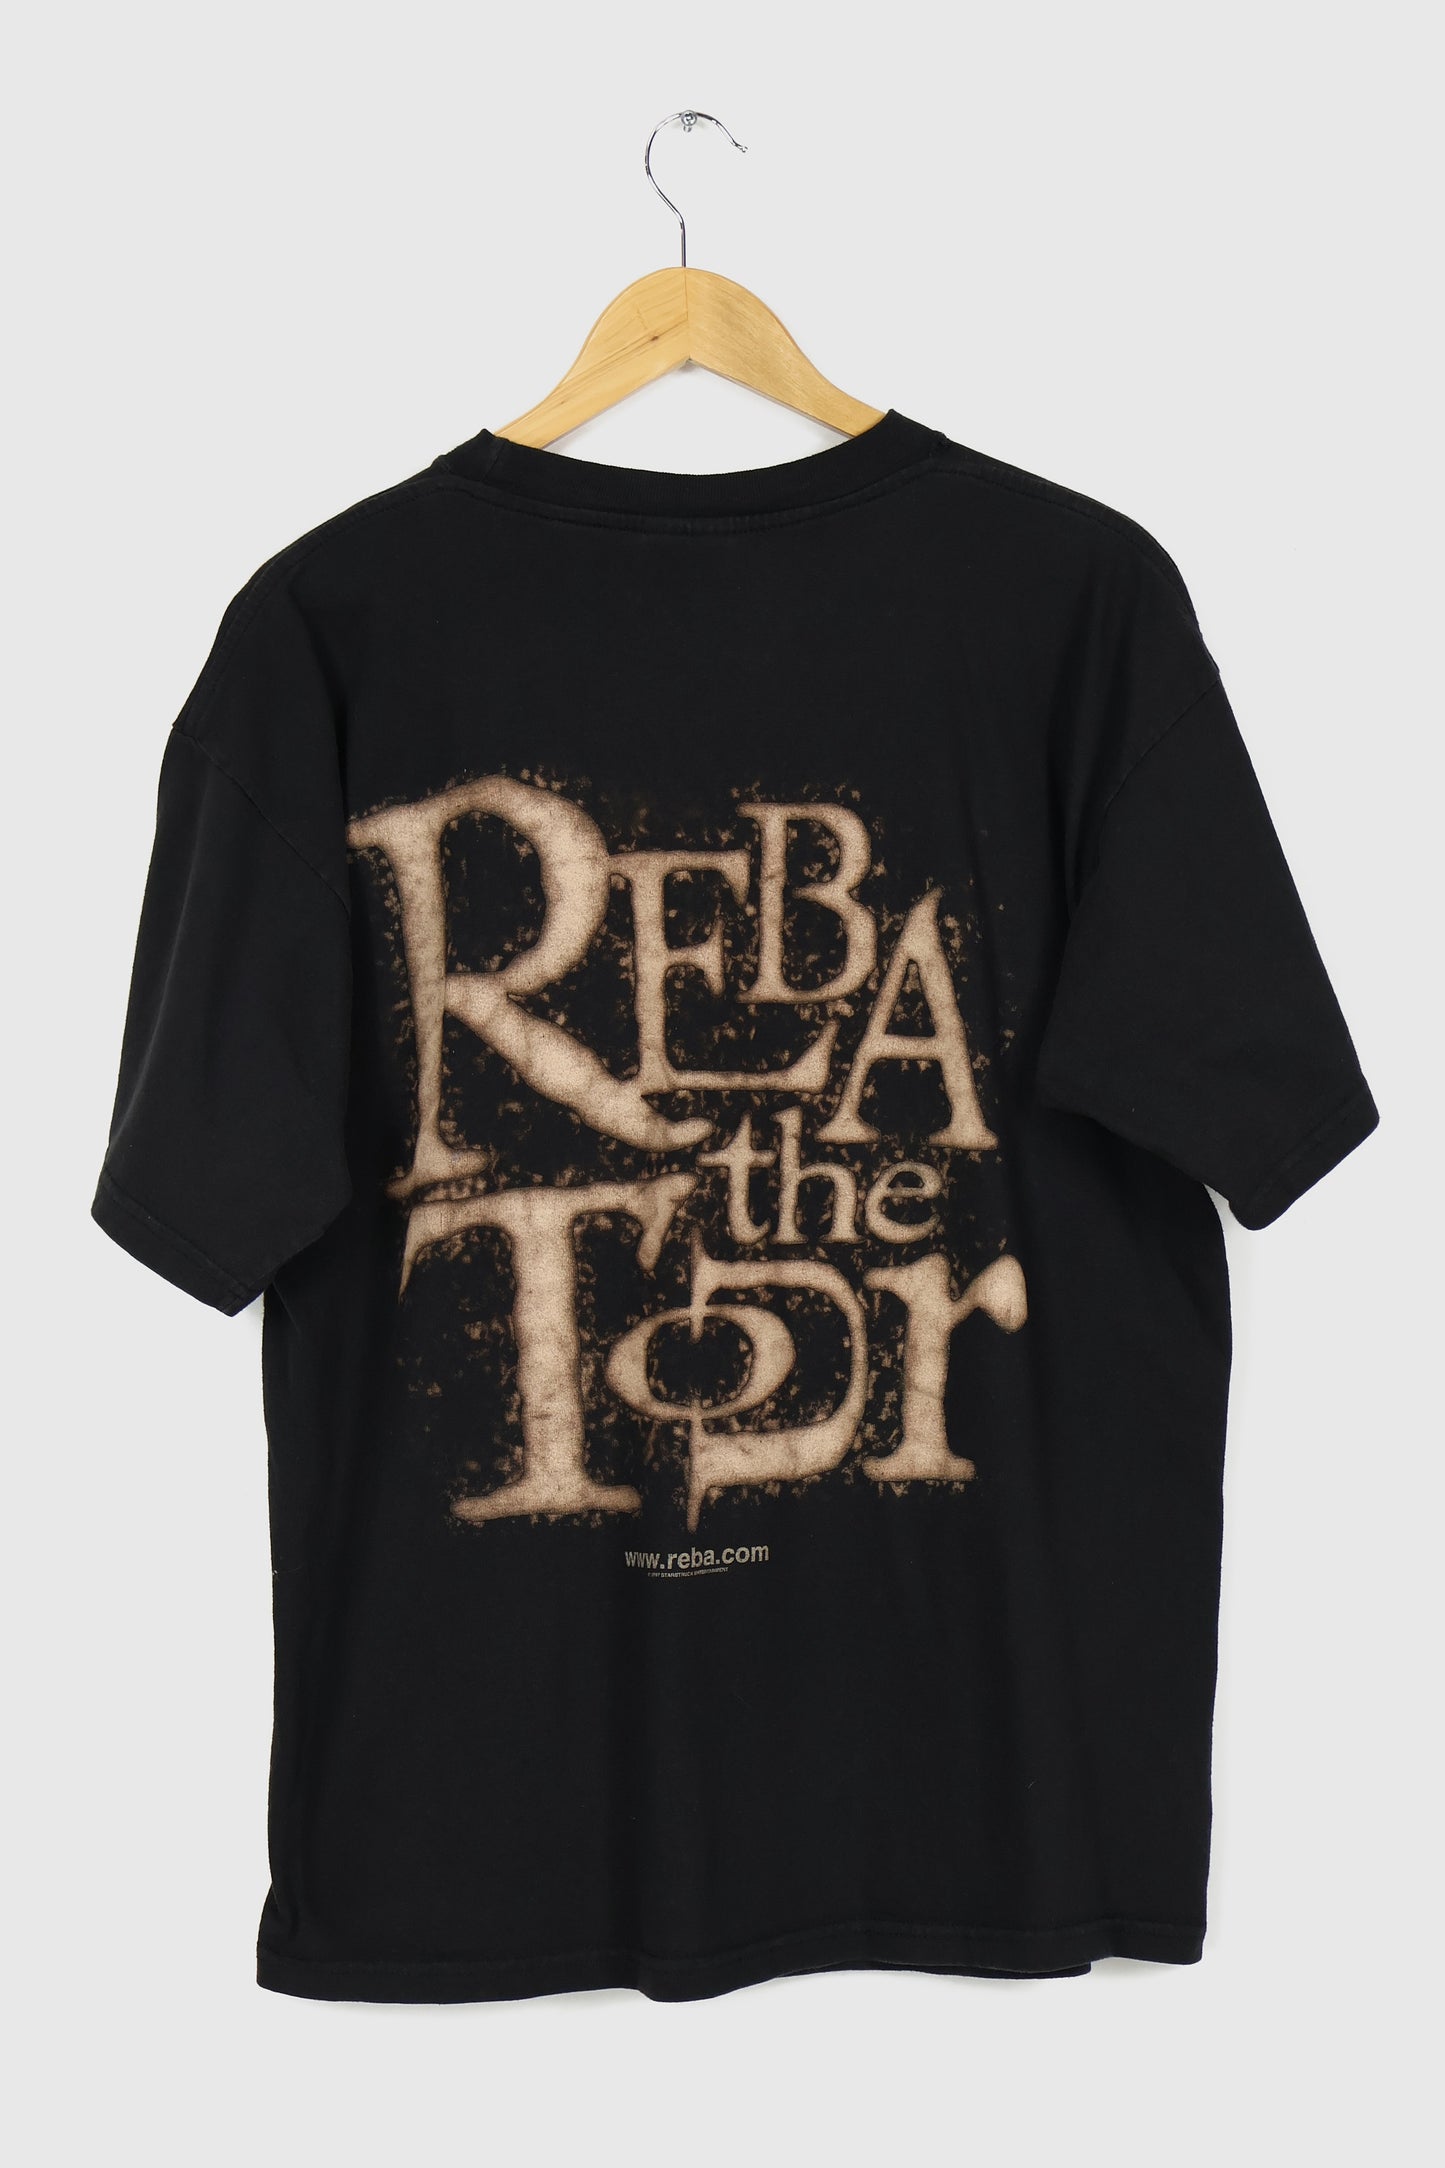 Vintage Reba The Tour 1997 Tee